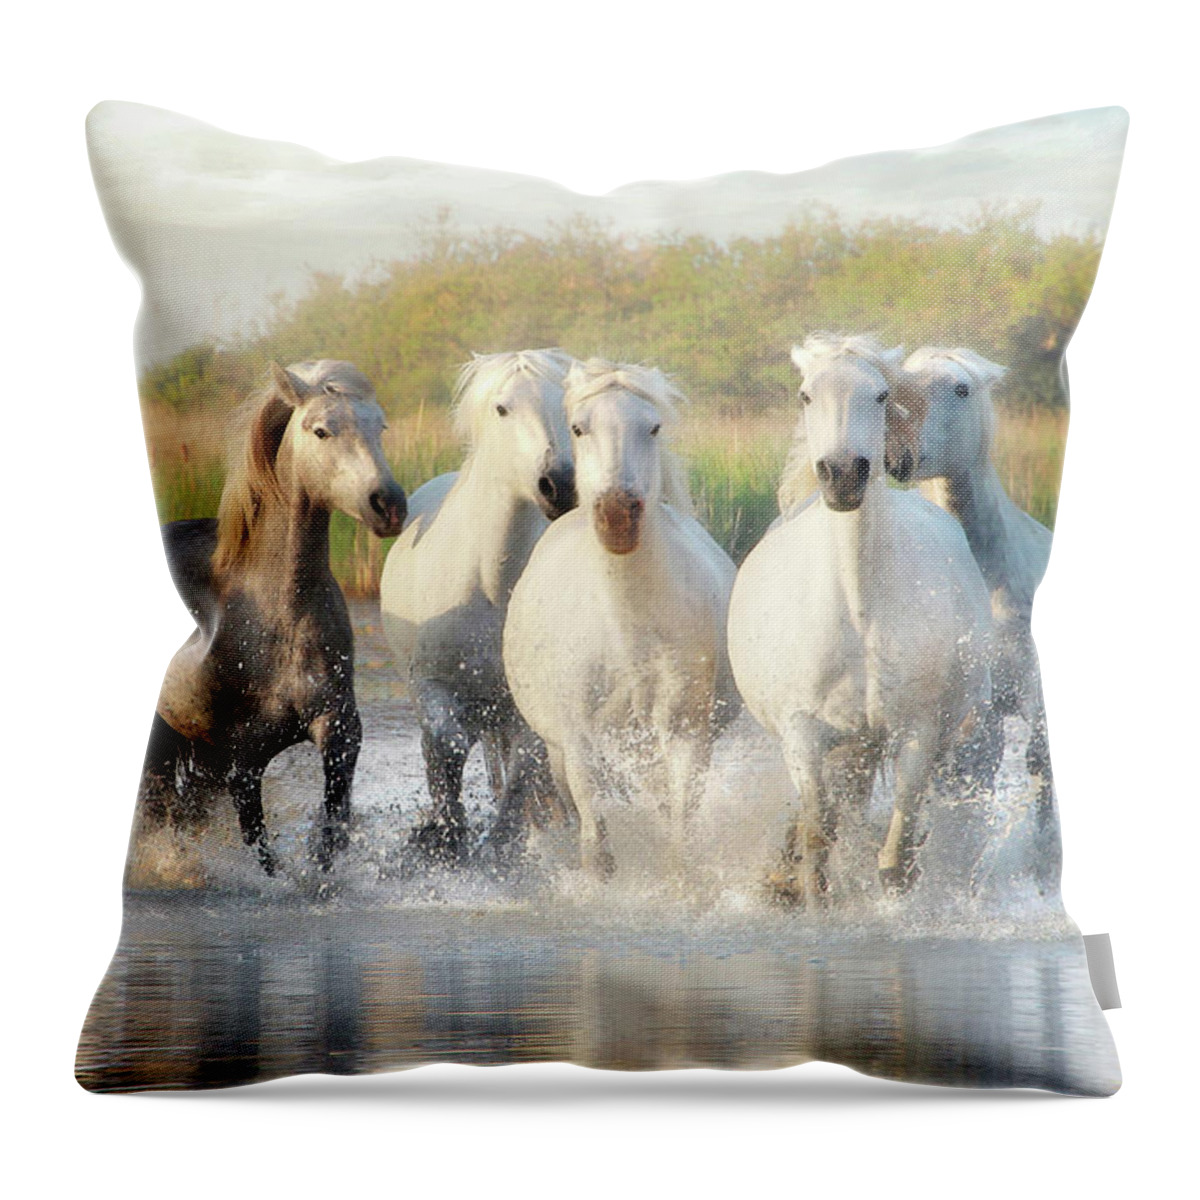 Horse Throw Pillow featuring the photograph Wild Friends by Karen Lynch